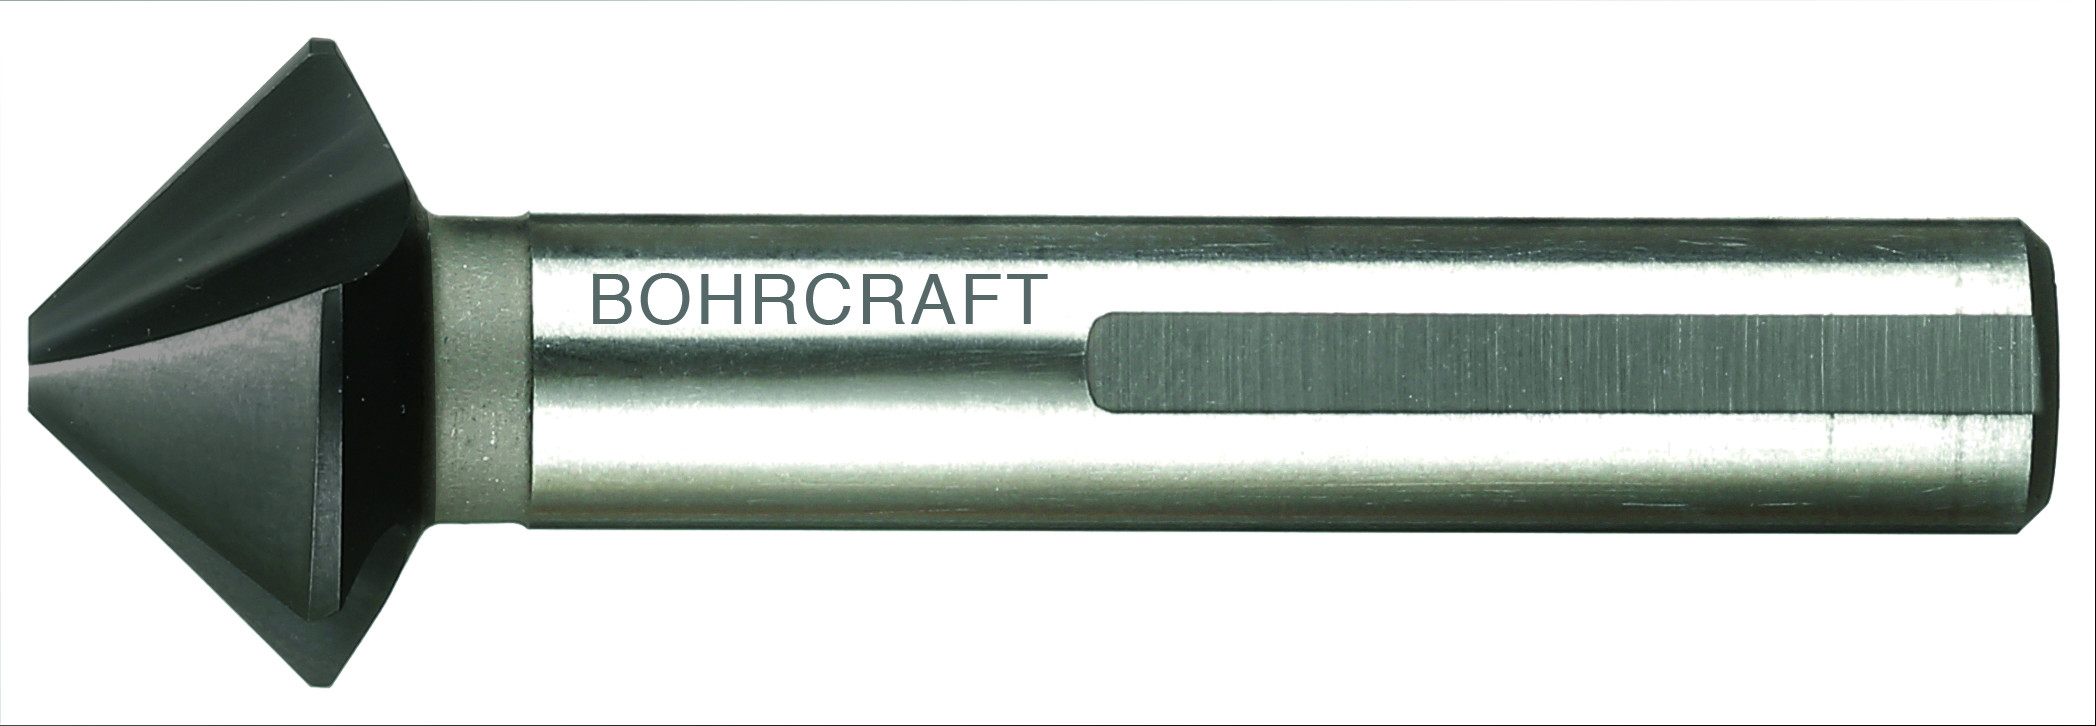 18: BOHRCRAFT Undersænker Ø31 mm 71 mm lang (17310331090)